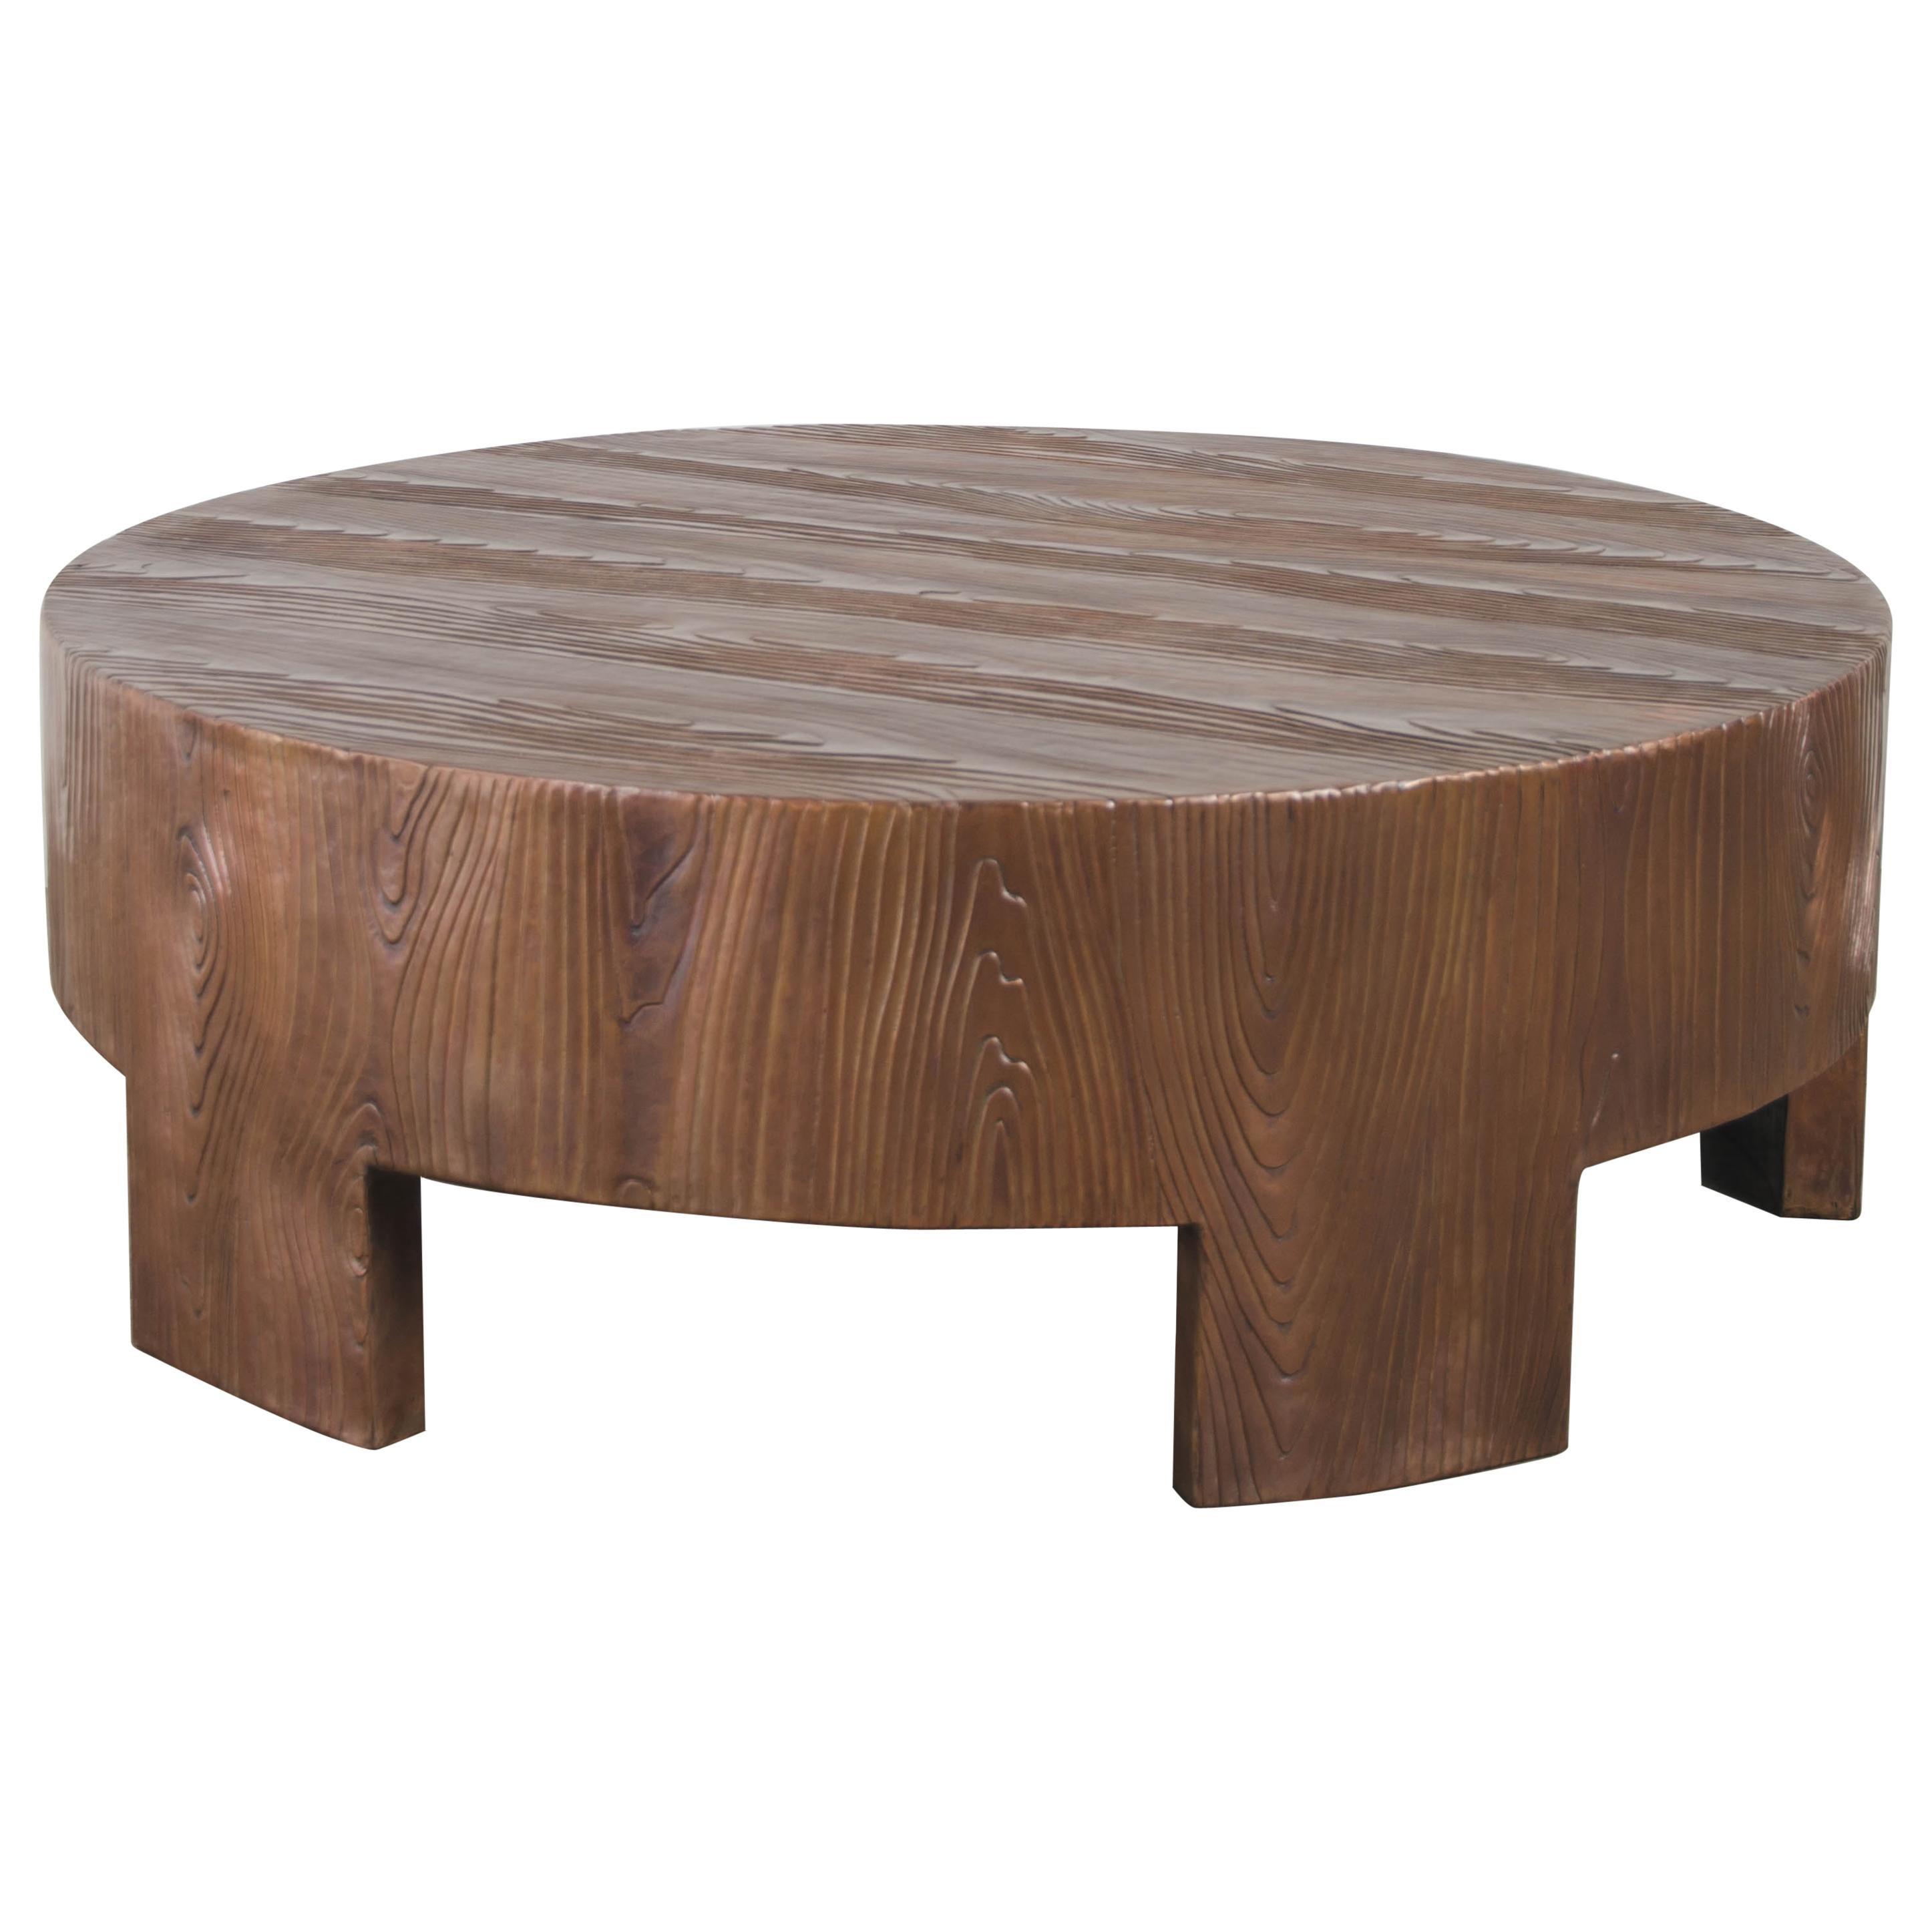 Table basse ronde basse ancienne, design fil du bois, cuivre, repoussée à la main, de Robert Kuo